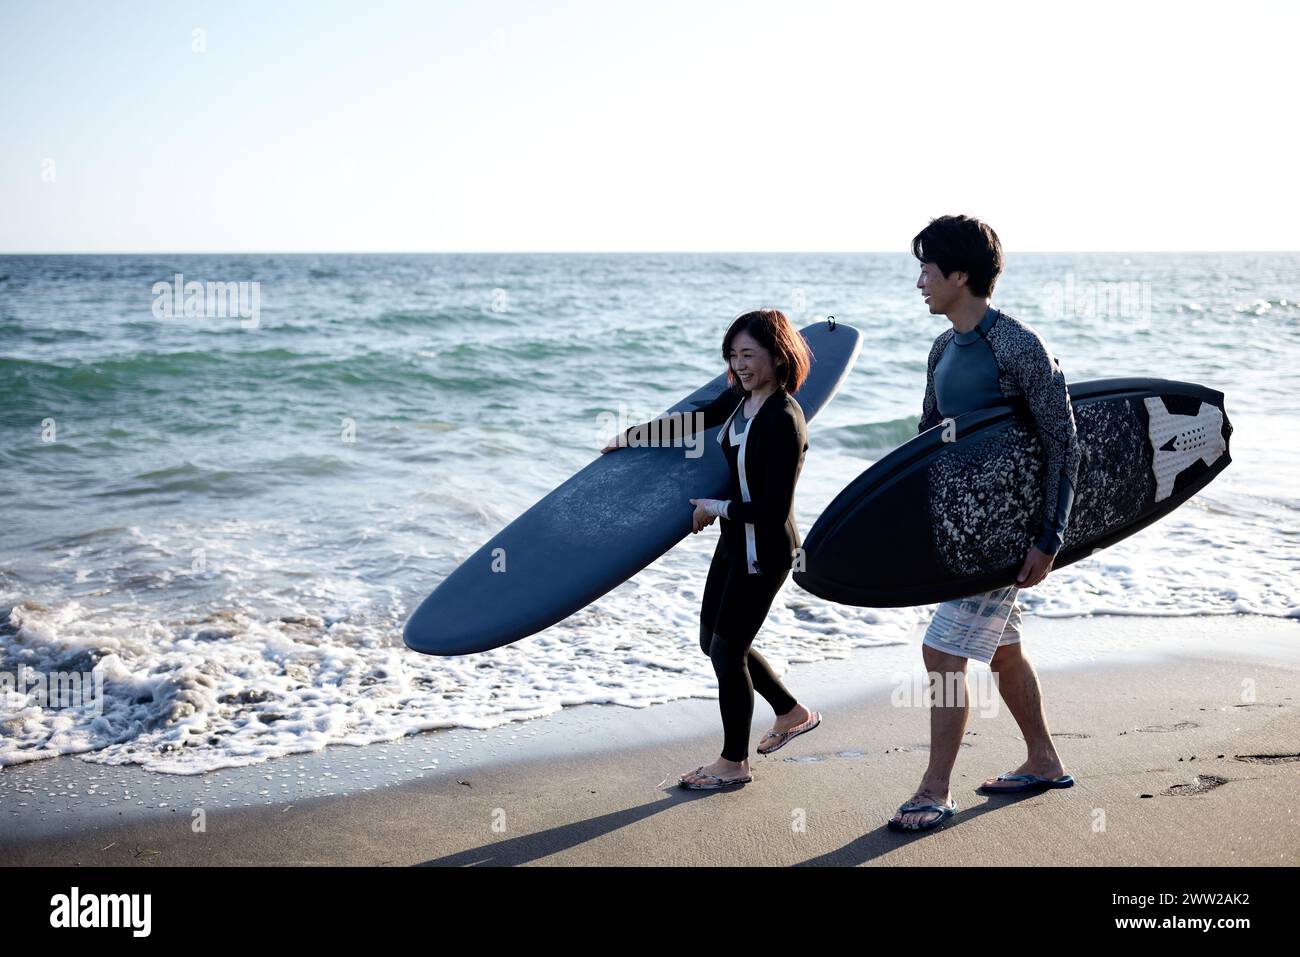 Un homme et une femme marchant sur la plage tenant des planches de surf Banque D'Images